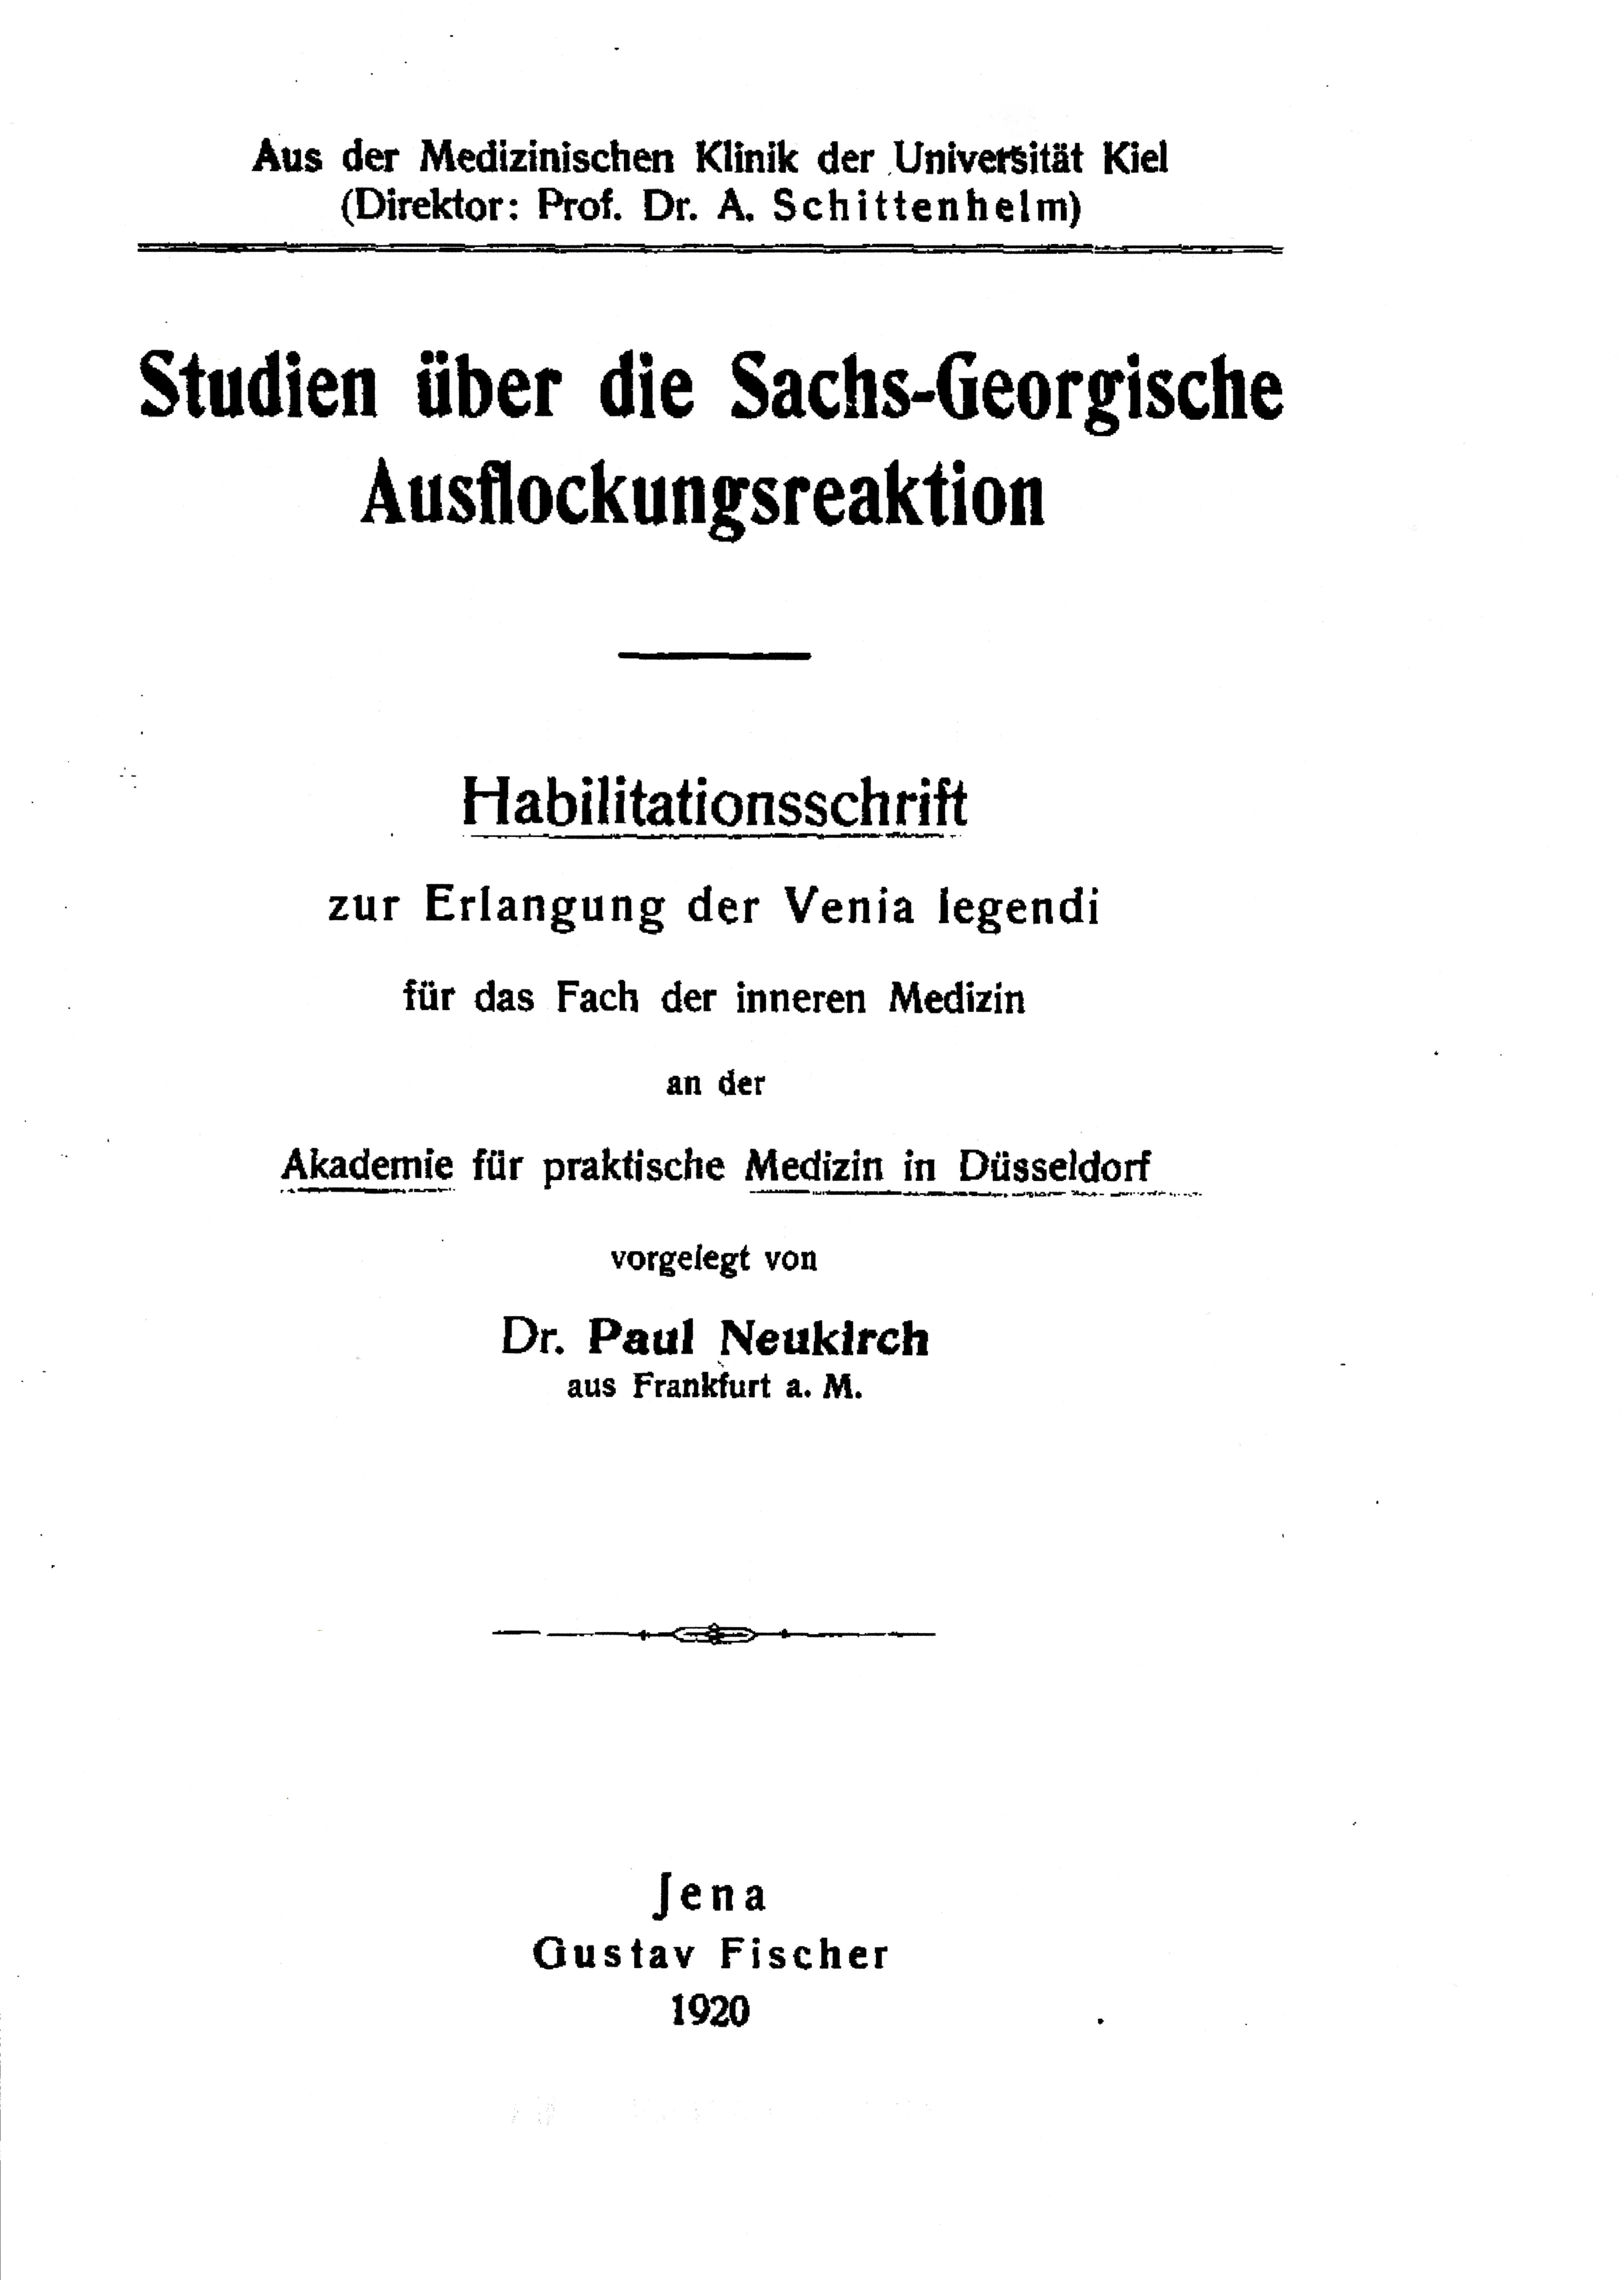 Habilitationsschrift, Düsseldorf 1920